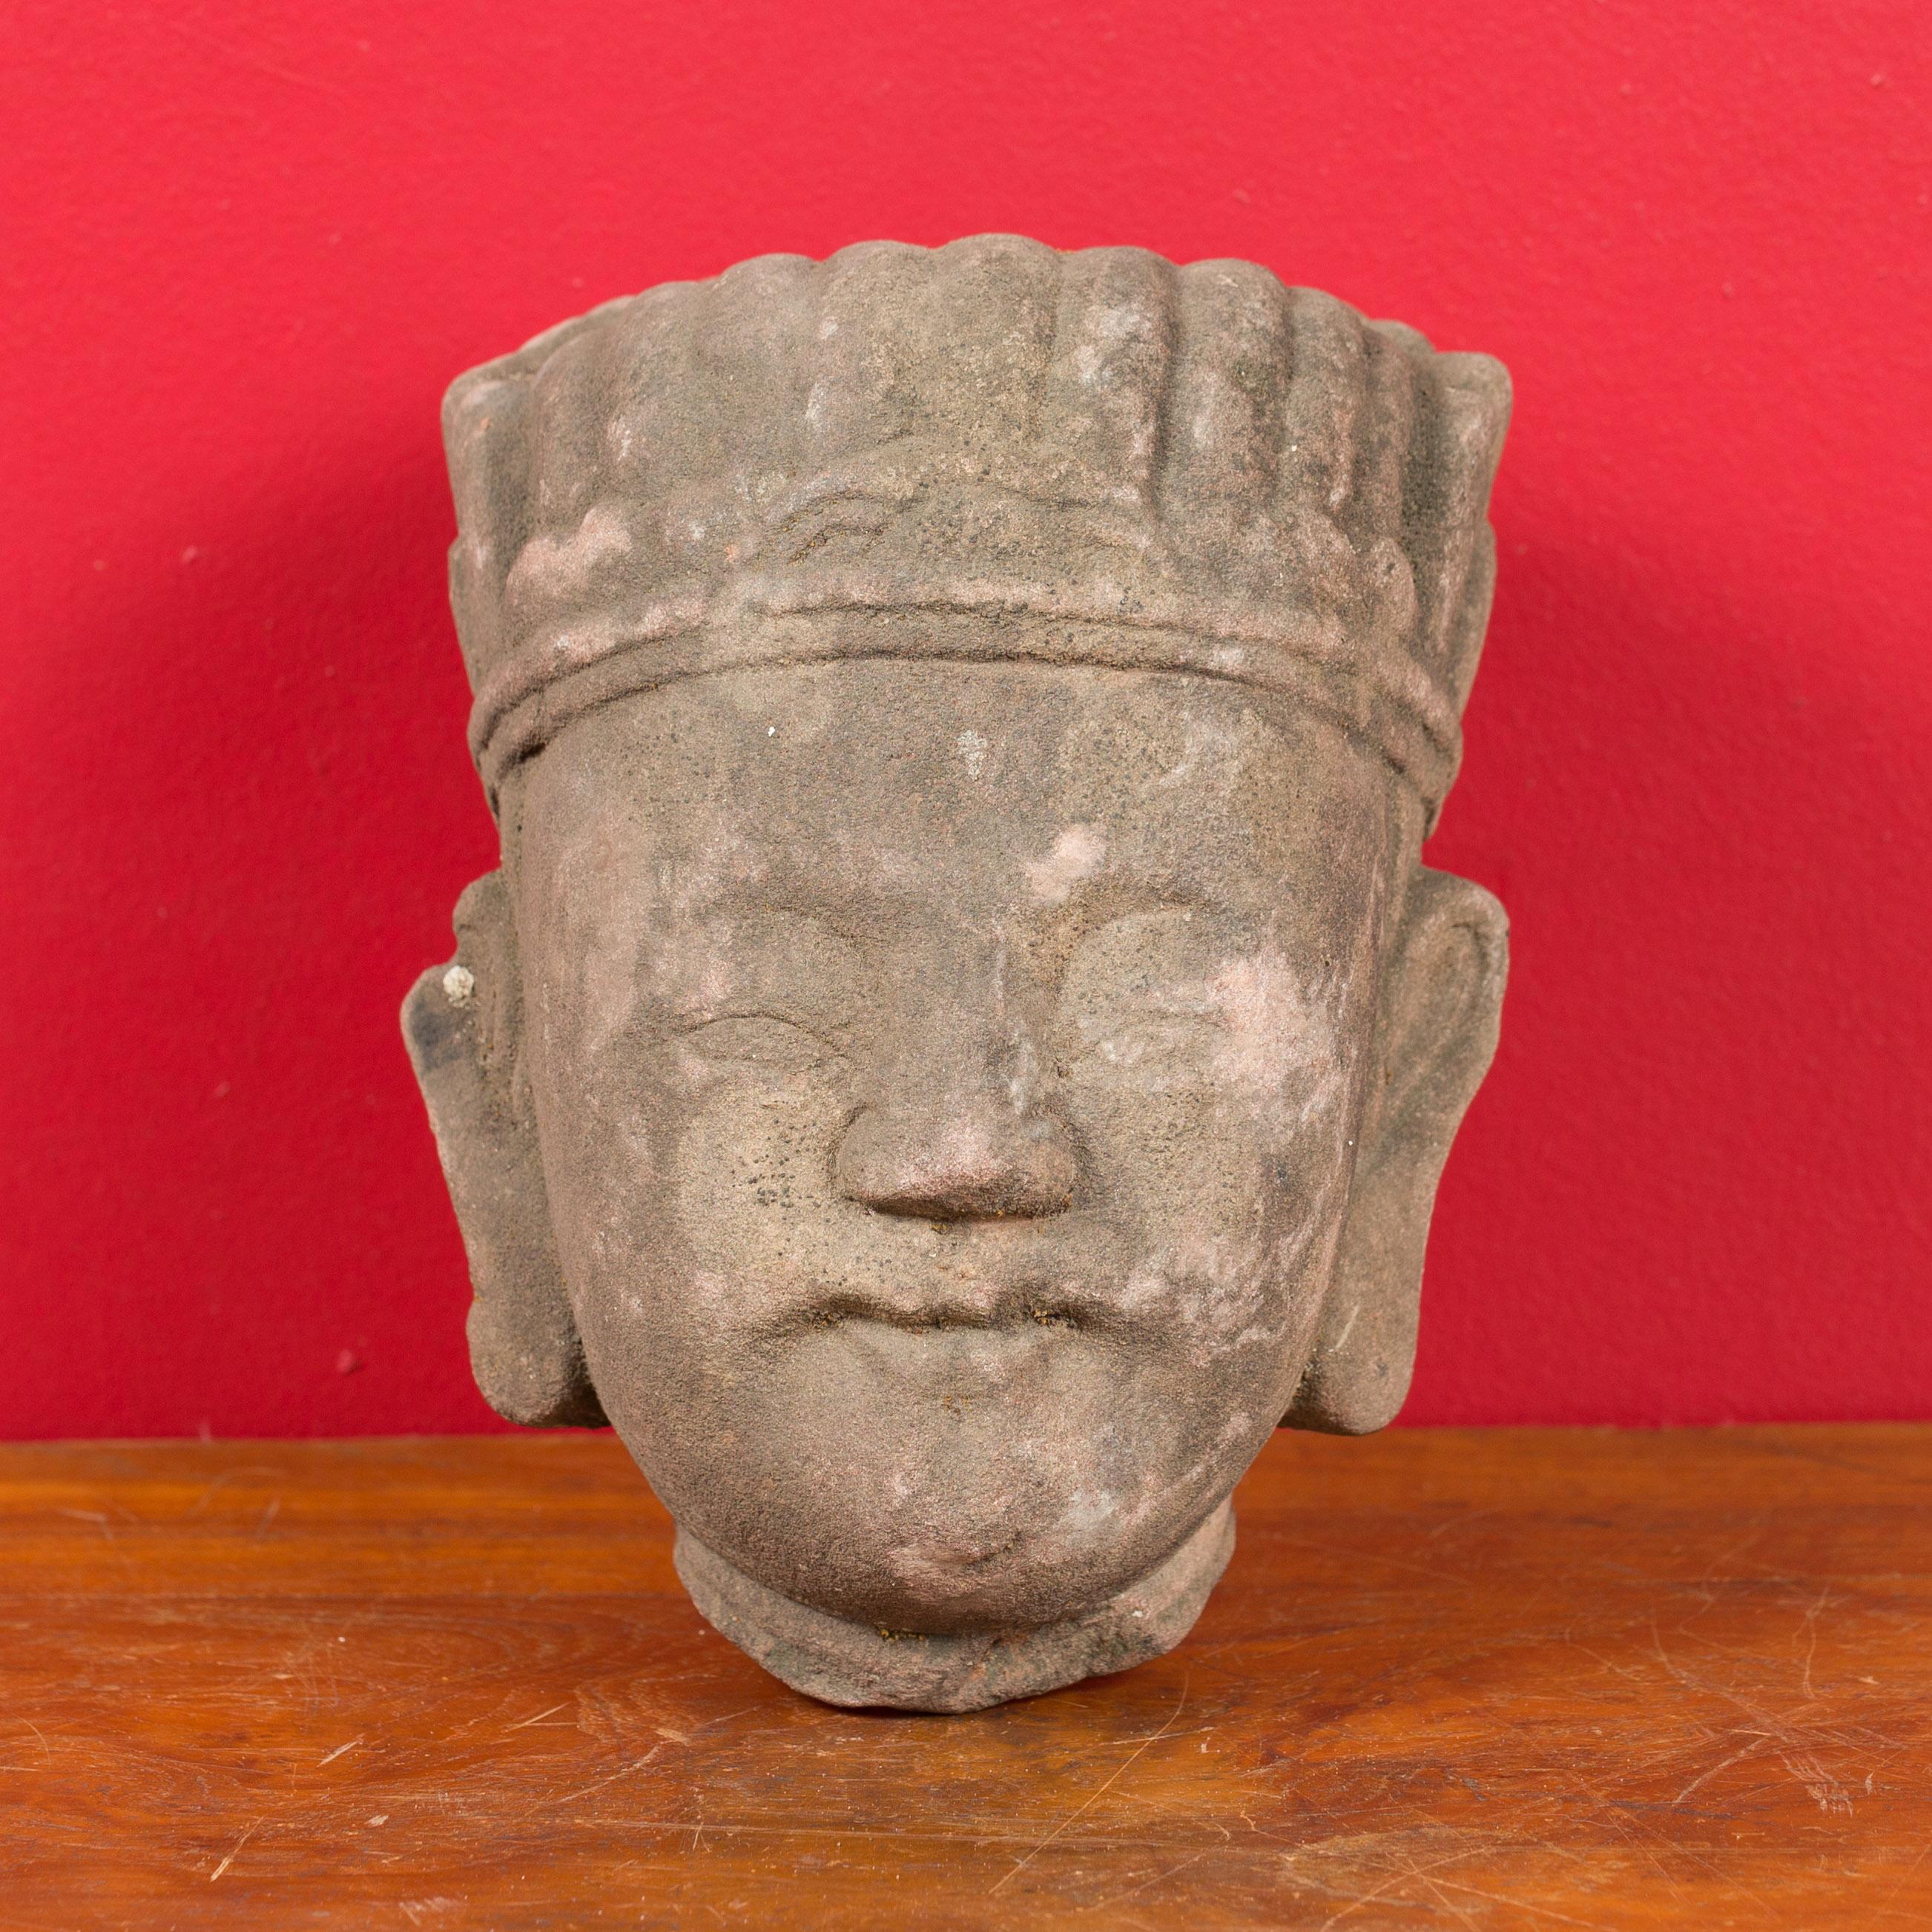 Sculpture de tête sculptée de la période de la dynastie chinoise Qing du 19ème siècle, avec coiffe. Sculptée en Chine pendant la dynastie Qing, cette sculpture représente la tête d'un fonctionnaire coiffé d'une coiffe. Dégageant un air de